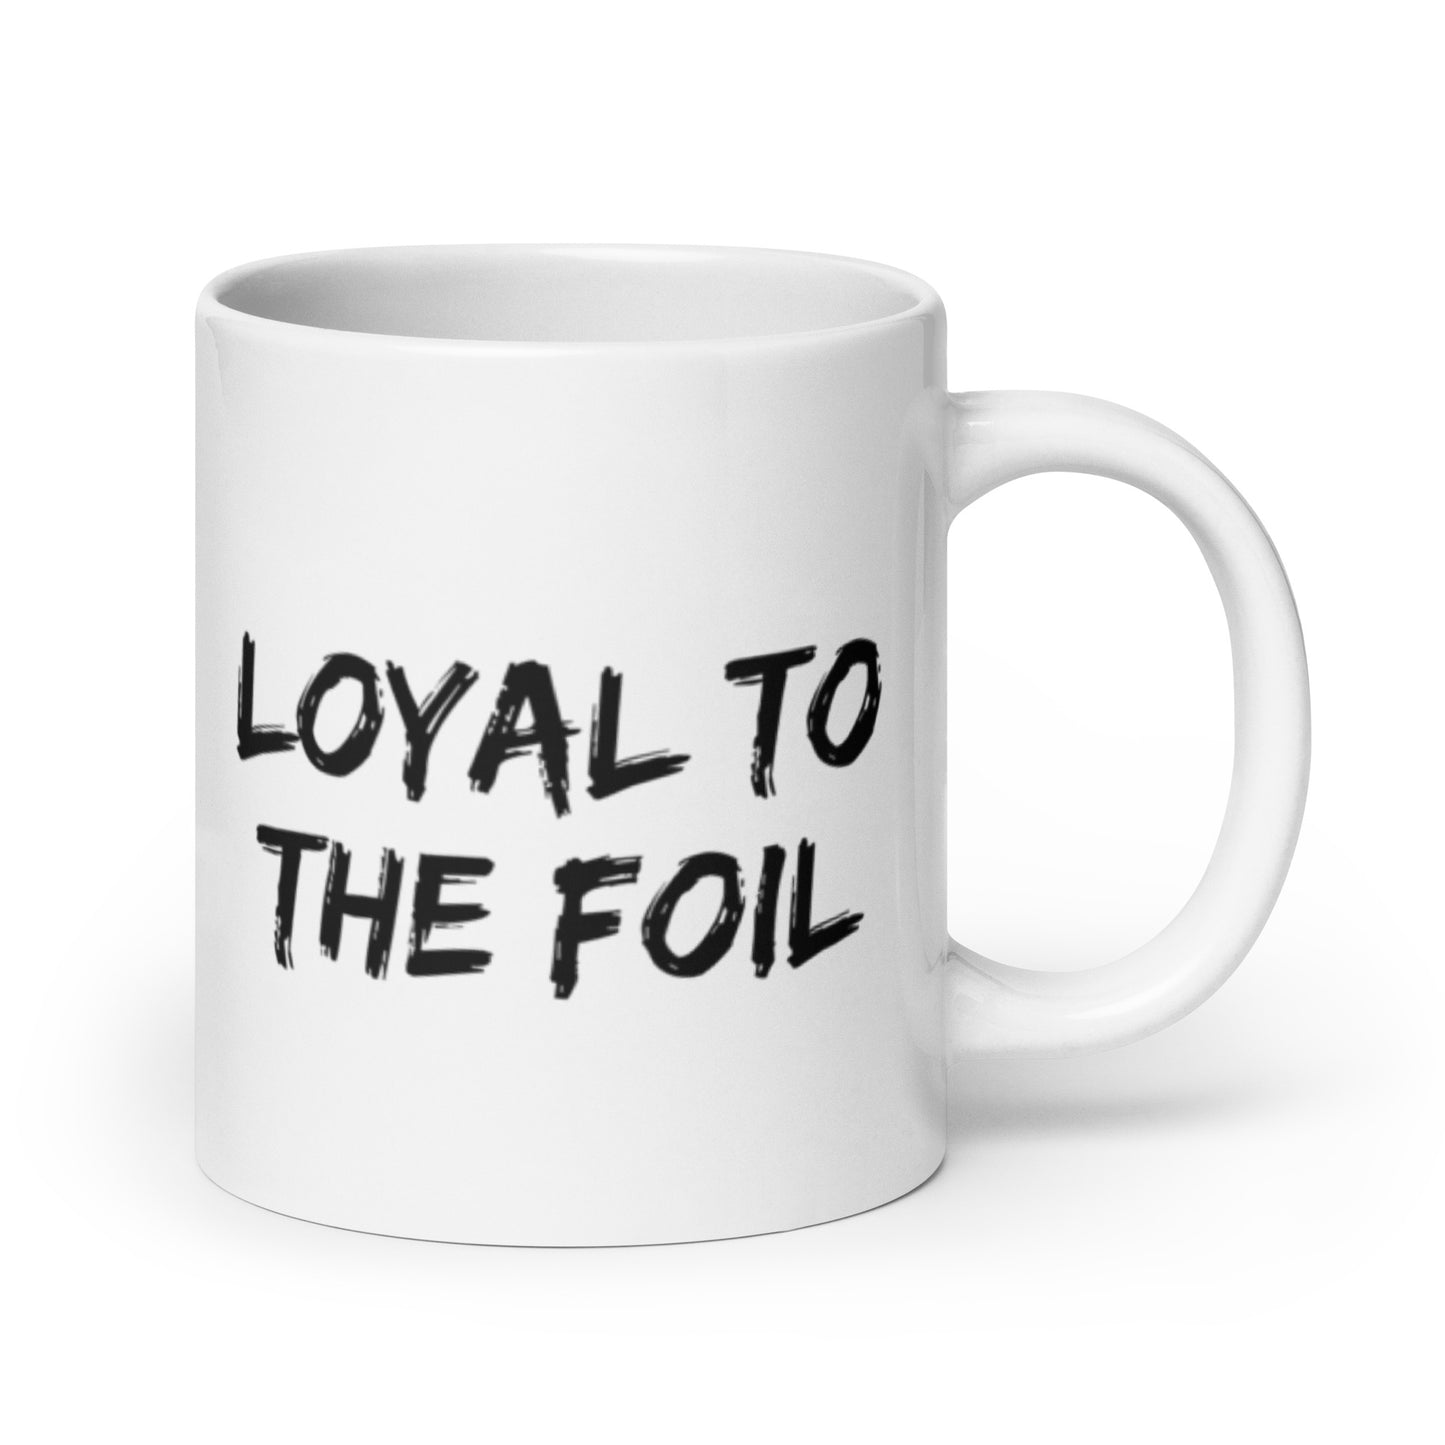 Loyal to the Foil Mug